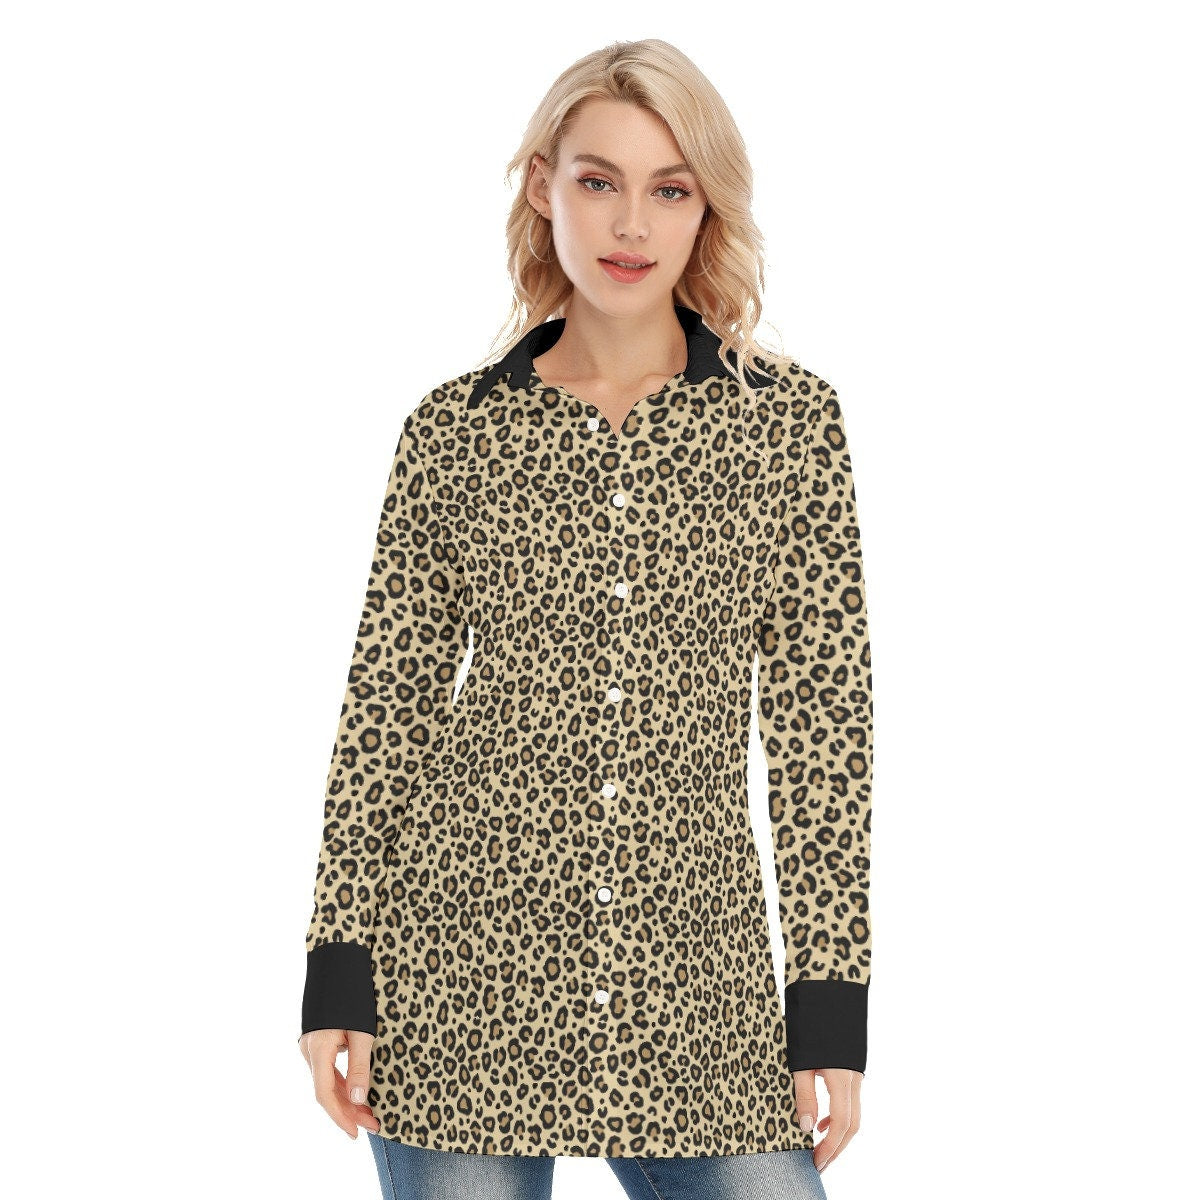 Chemise léopard, chemise imprimé léopard faite à la main, chemise sexy, chemise imprimé animal, chemisier femme, haut femme, chemise à manches longues femmes, haute couture